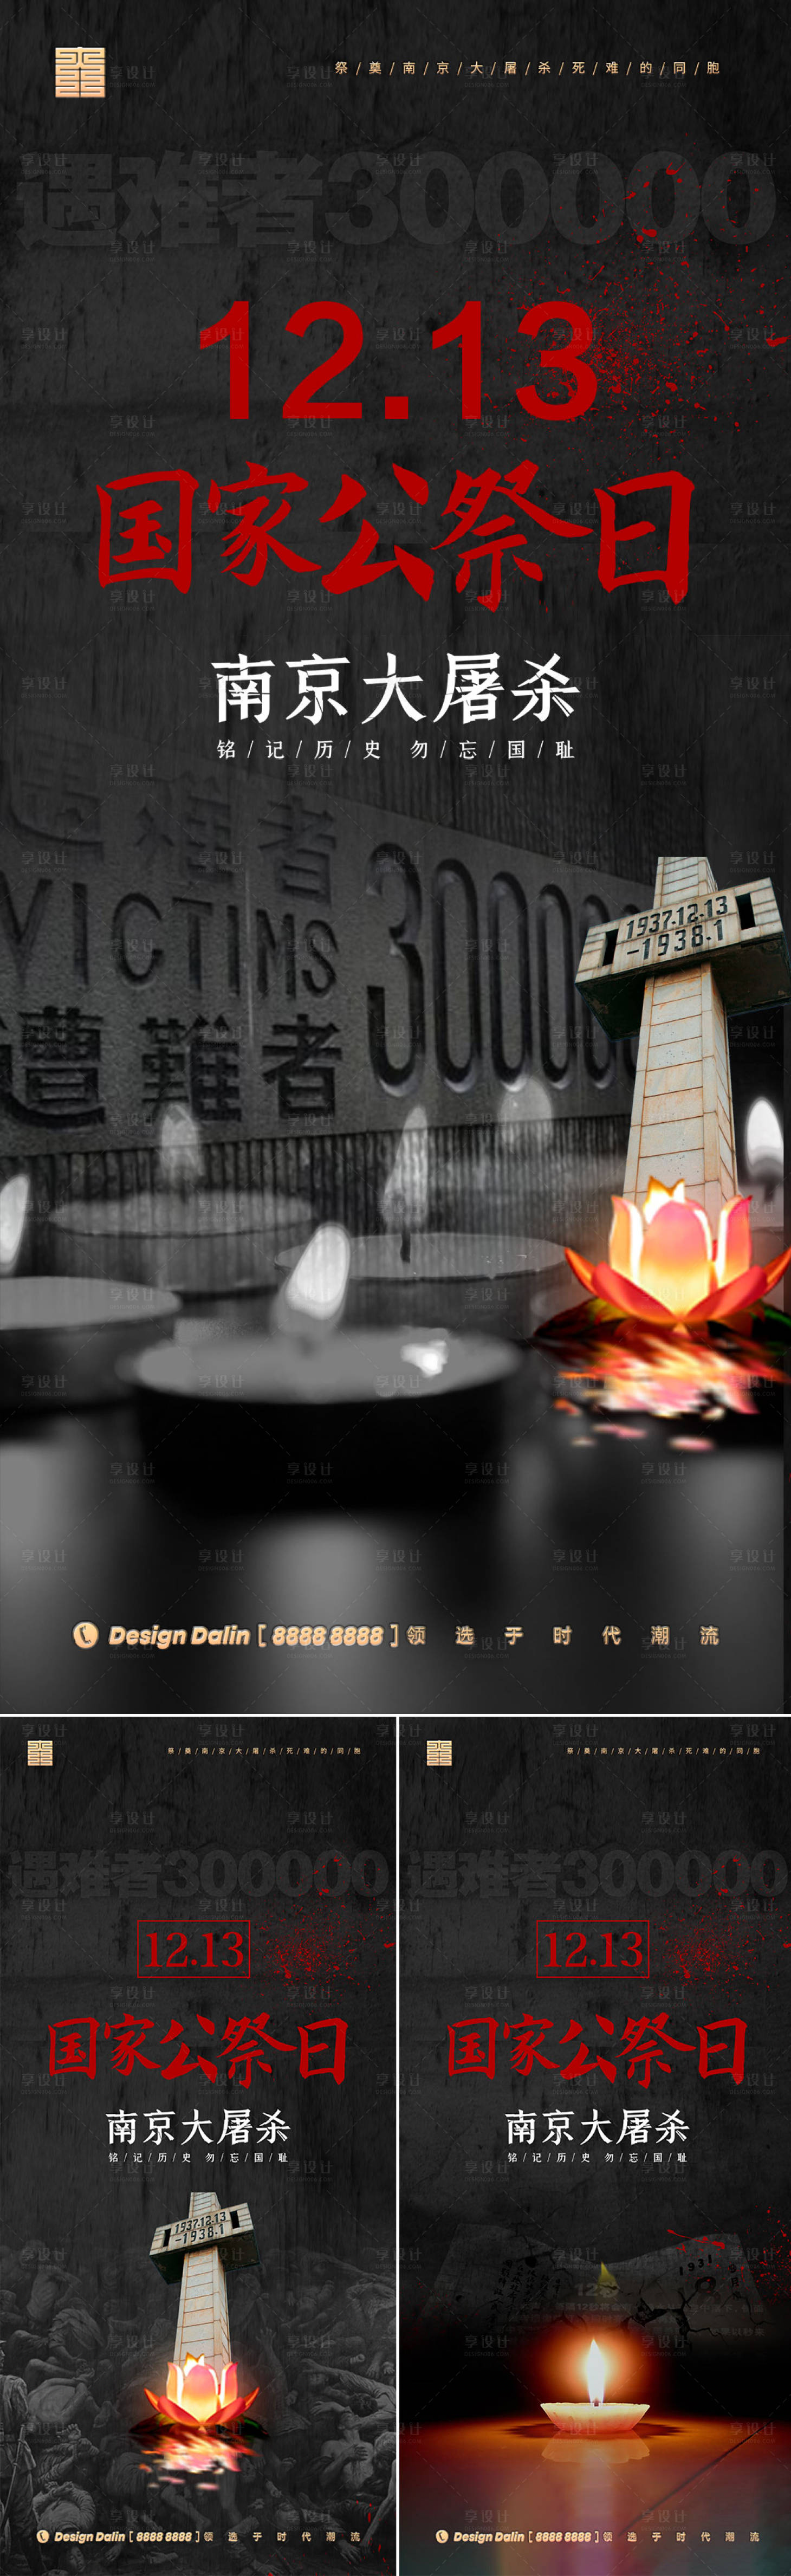 地产1213国家公祭日南京大屠杀海报PSD广告设计素材海报模板免费下载-享设计